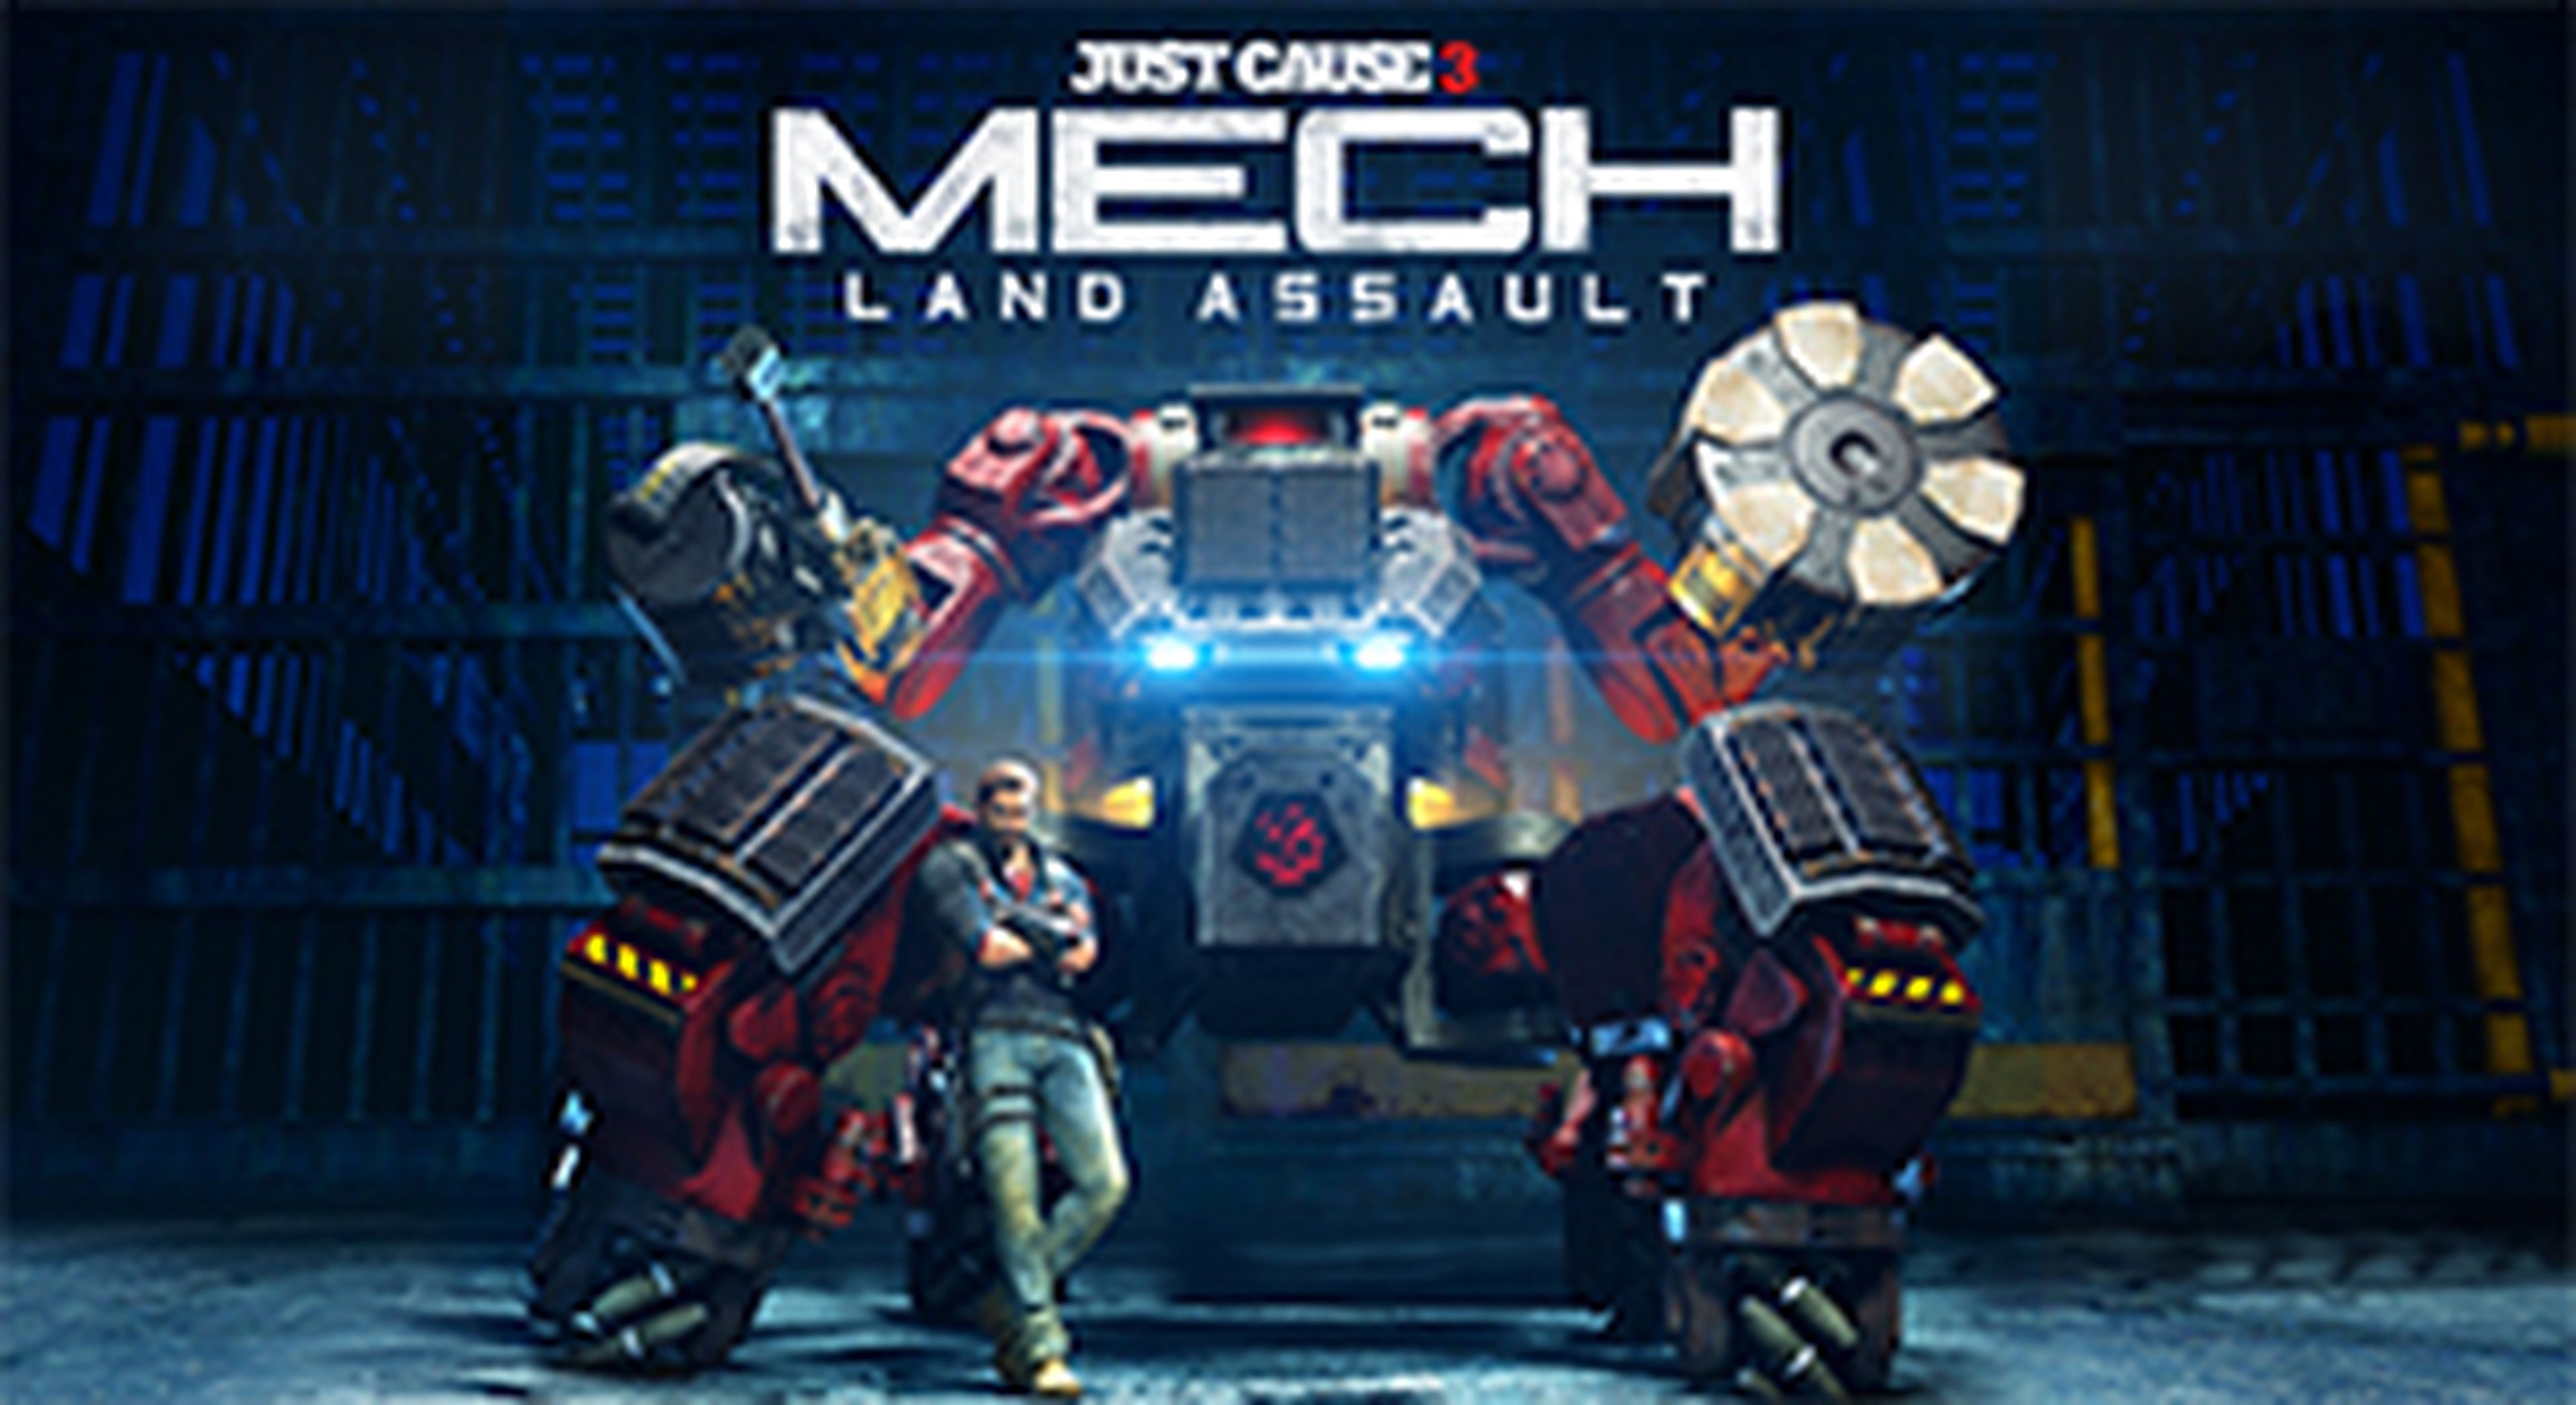 Just Cause 3 Mech Land Assault DLC - Avance